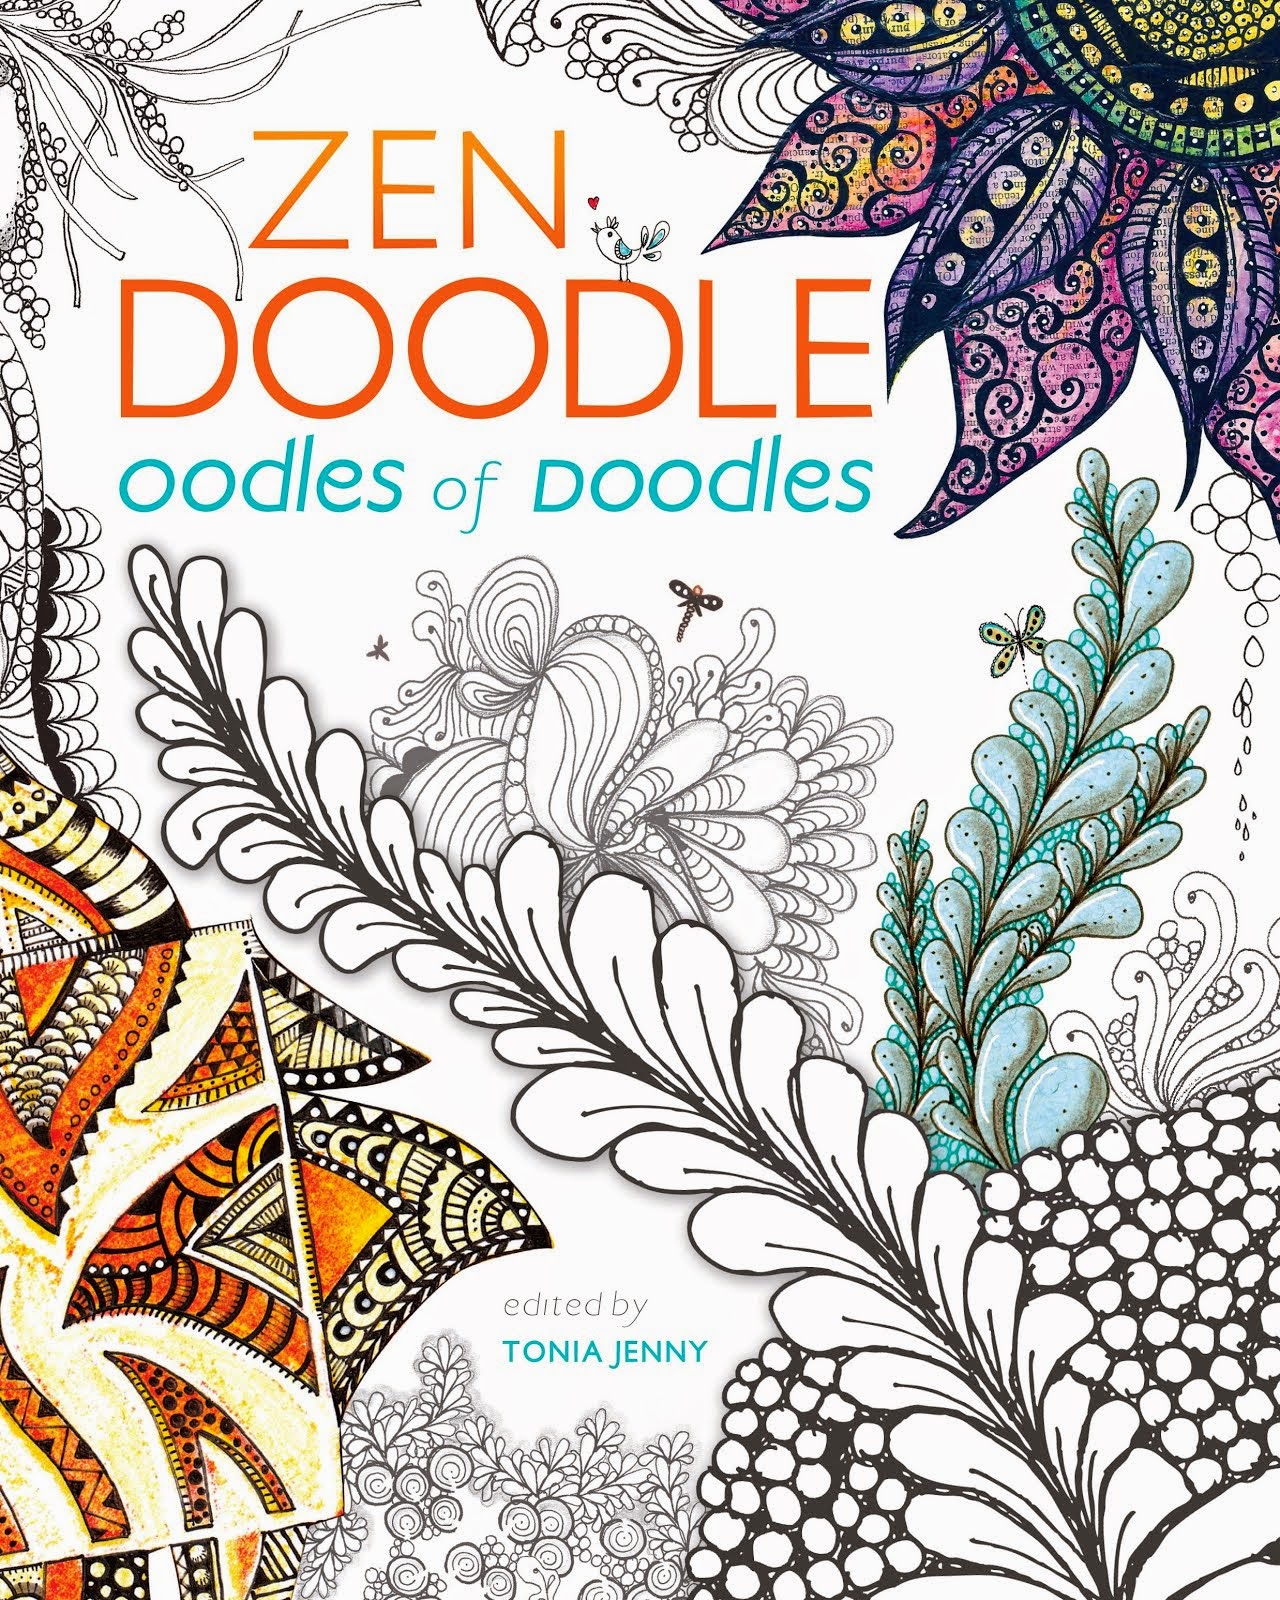 Zen Doodle: Oodles of Doodles